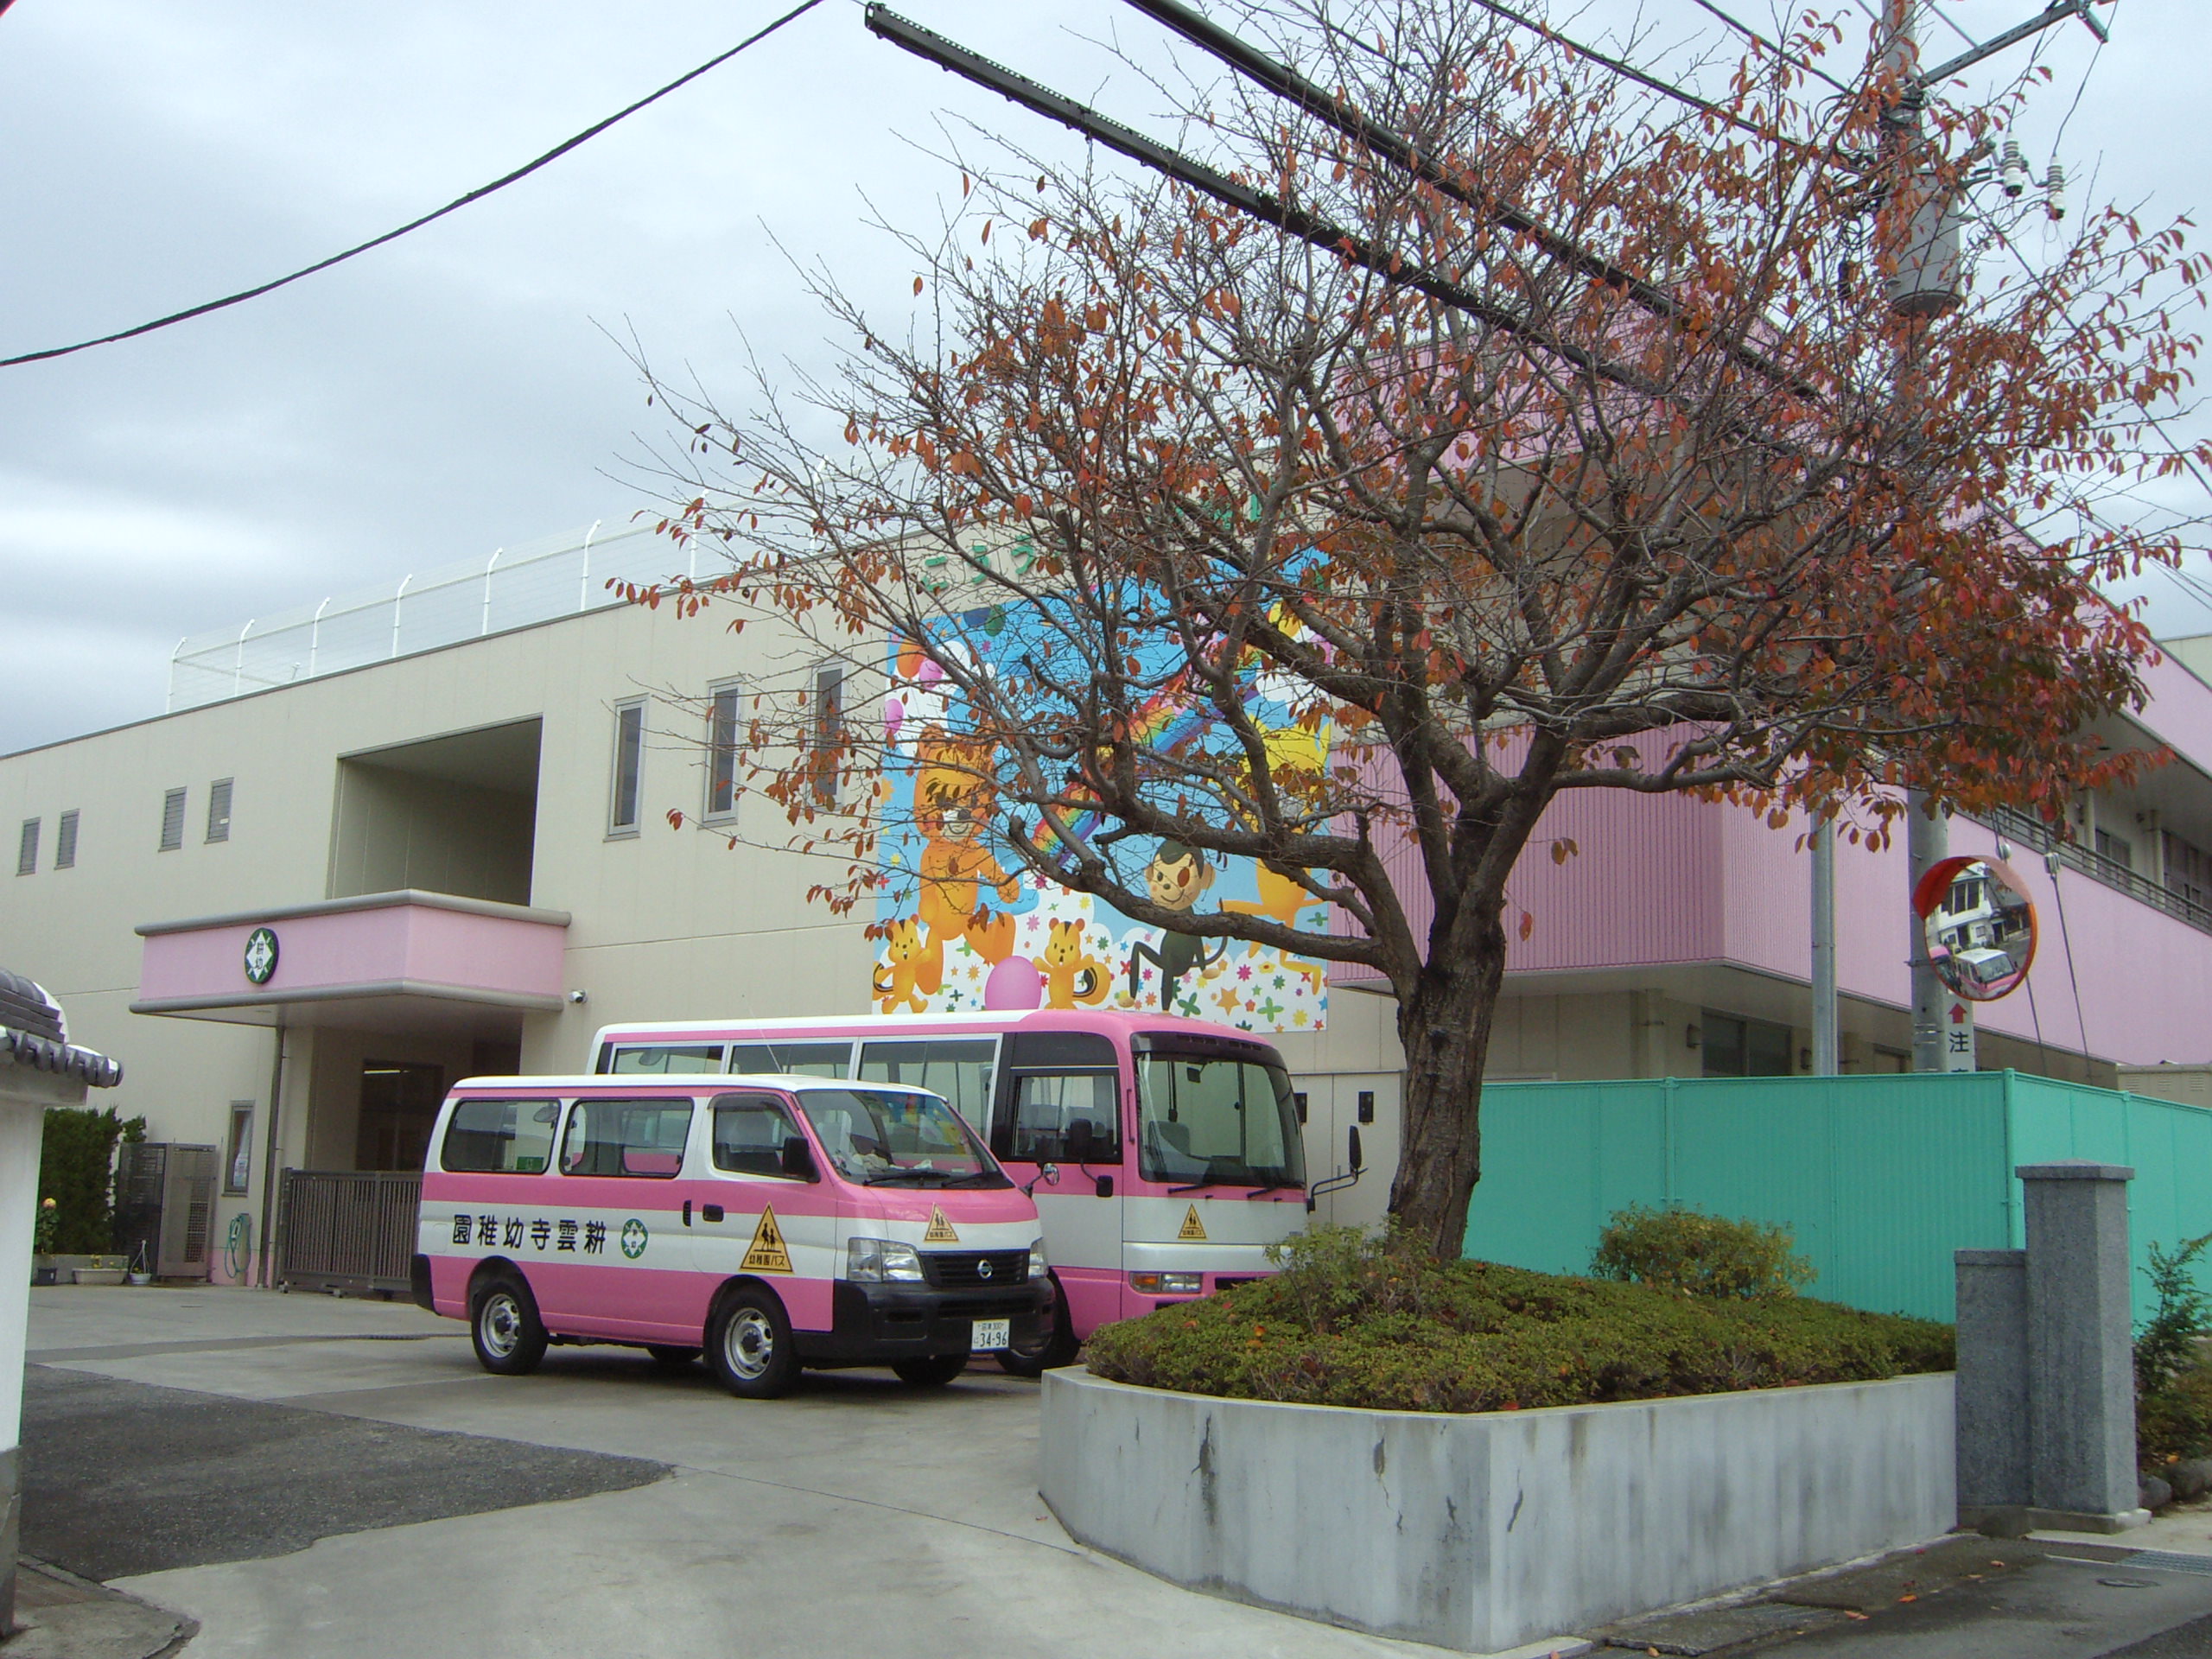 kindergarten ・ Nursery. Kounji kindergarten (kindergarten ・ 1100m to the nursery)